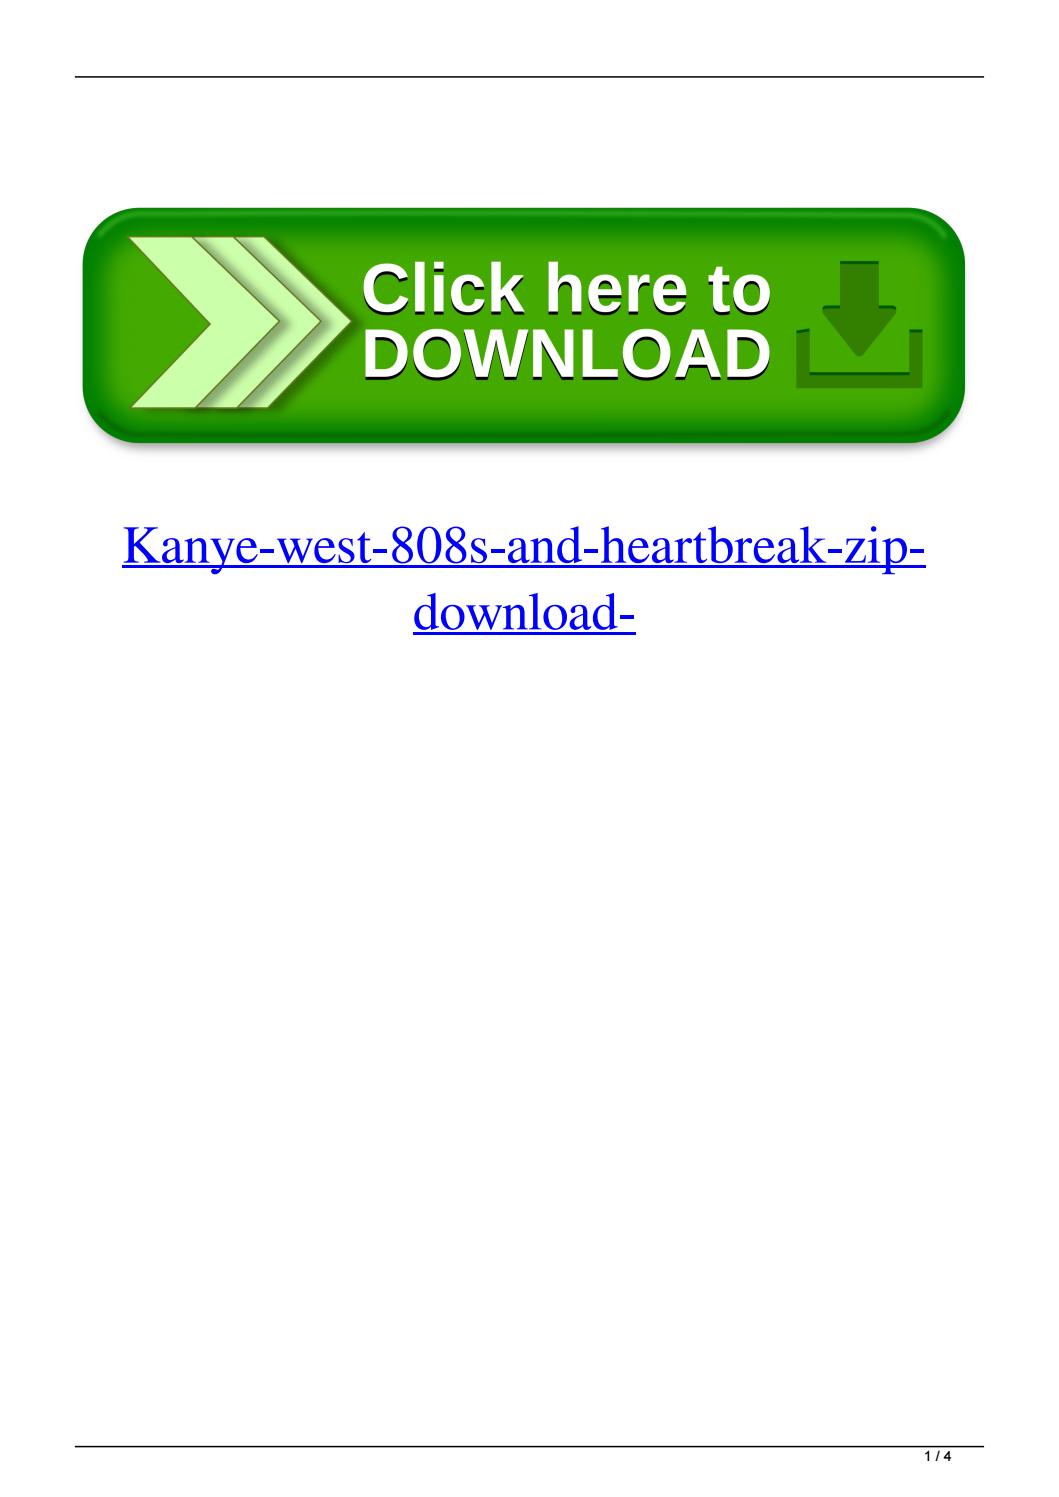 Kanye west 808 heartbreak zip